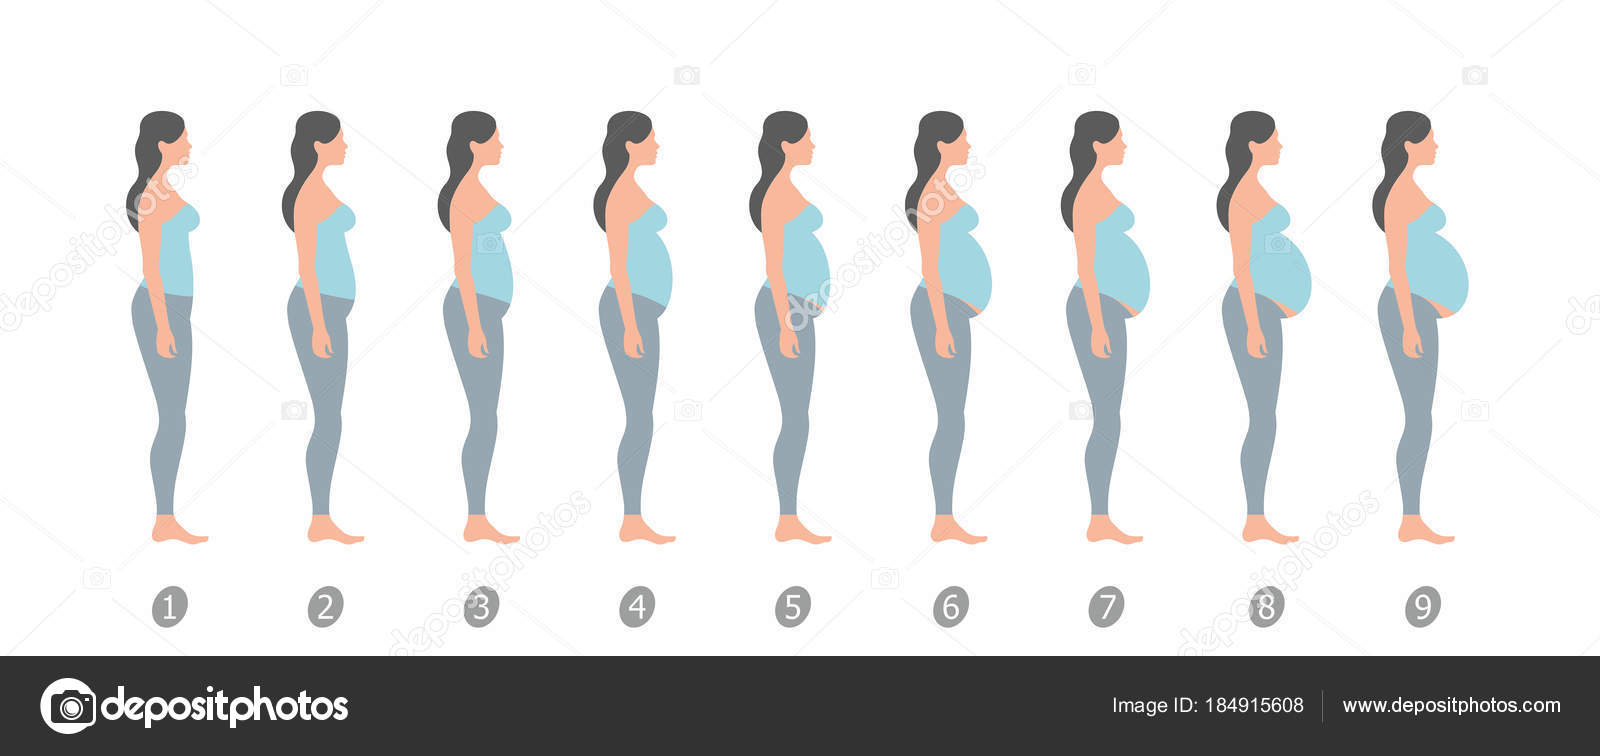 увеличивается ли грудь в первые недели беременности фото 104